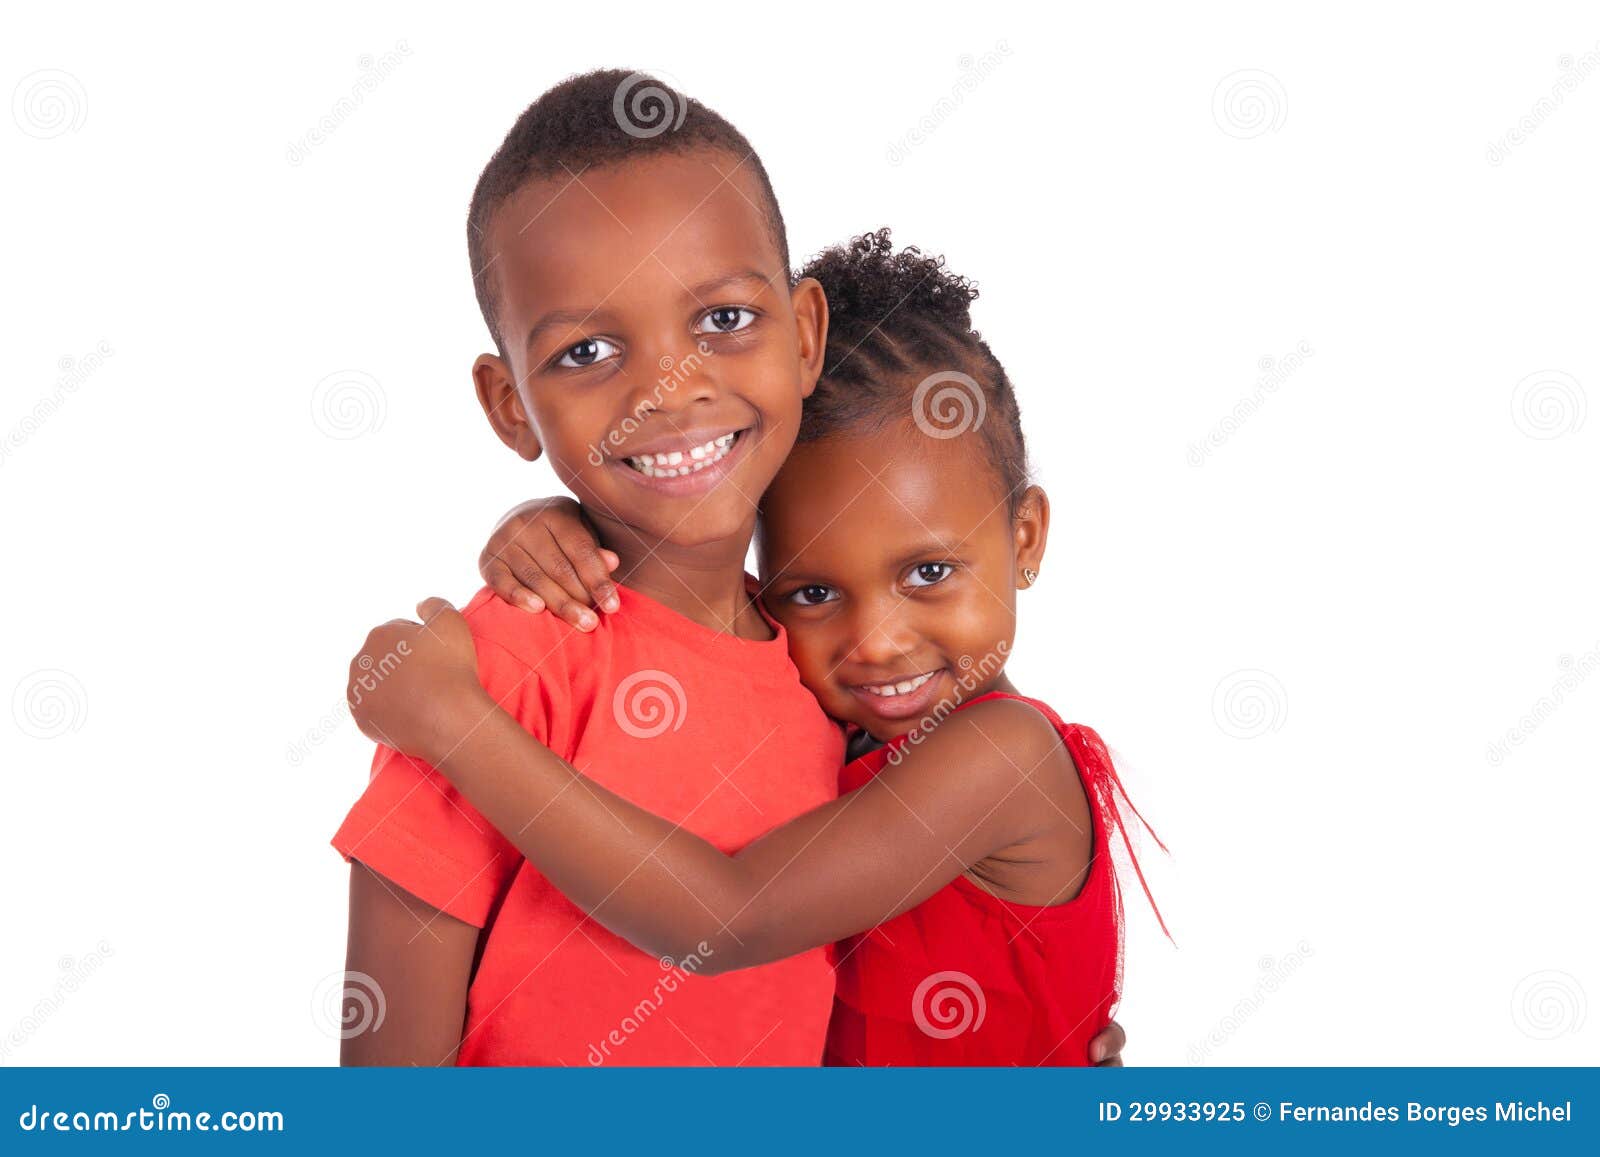 Чернокожие брата. Младенец афроамериканец. Афро мальчик и девочка. Чернокожие брат и сестра. Счастливые дети на белом фоне с афроамериканцем.